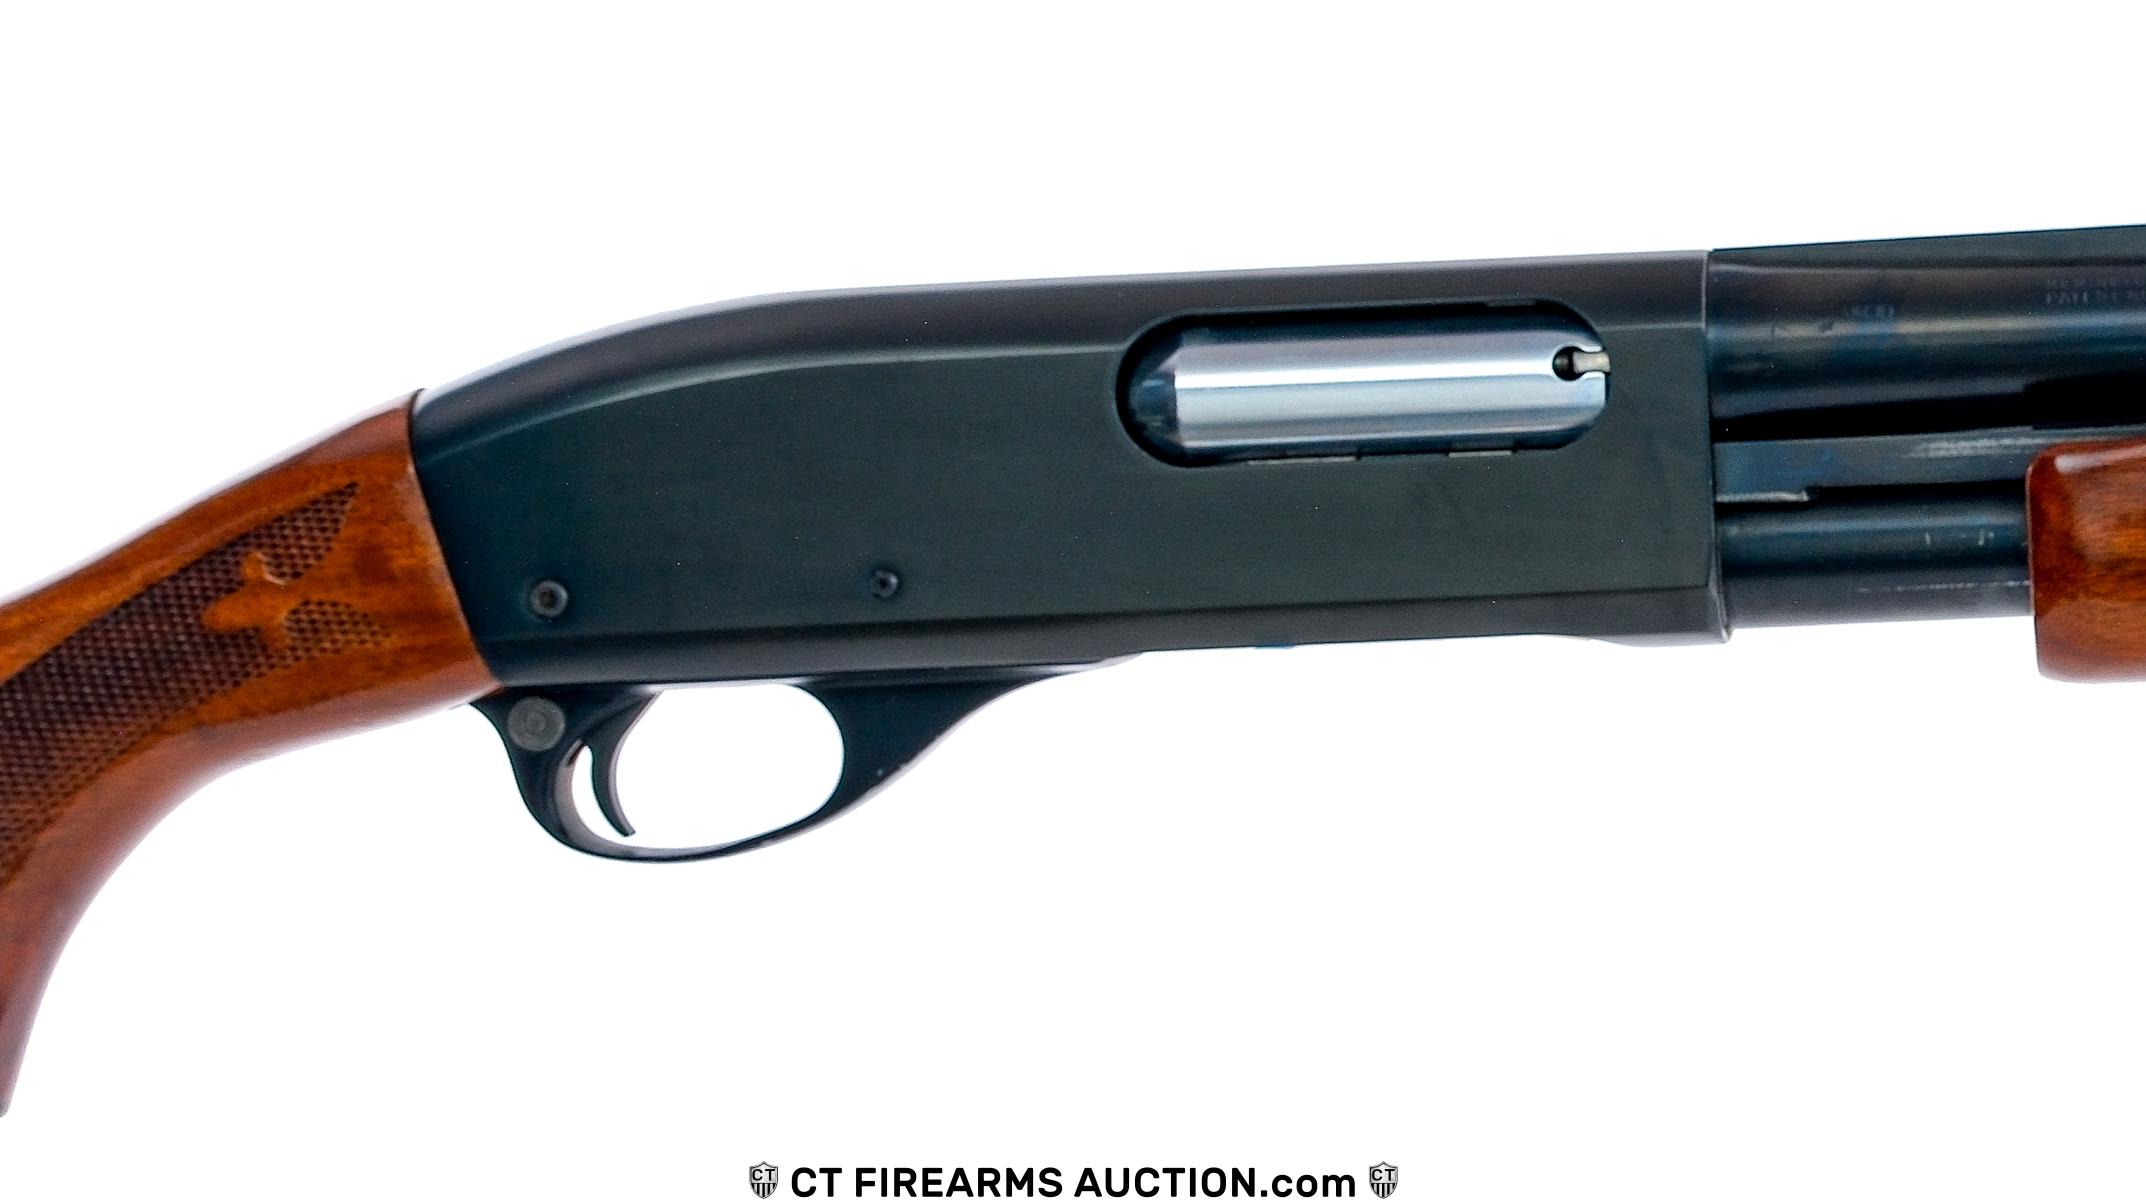 Remington Wingmaster 870 12Ga Pump Shotgun